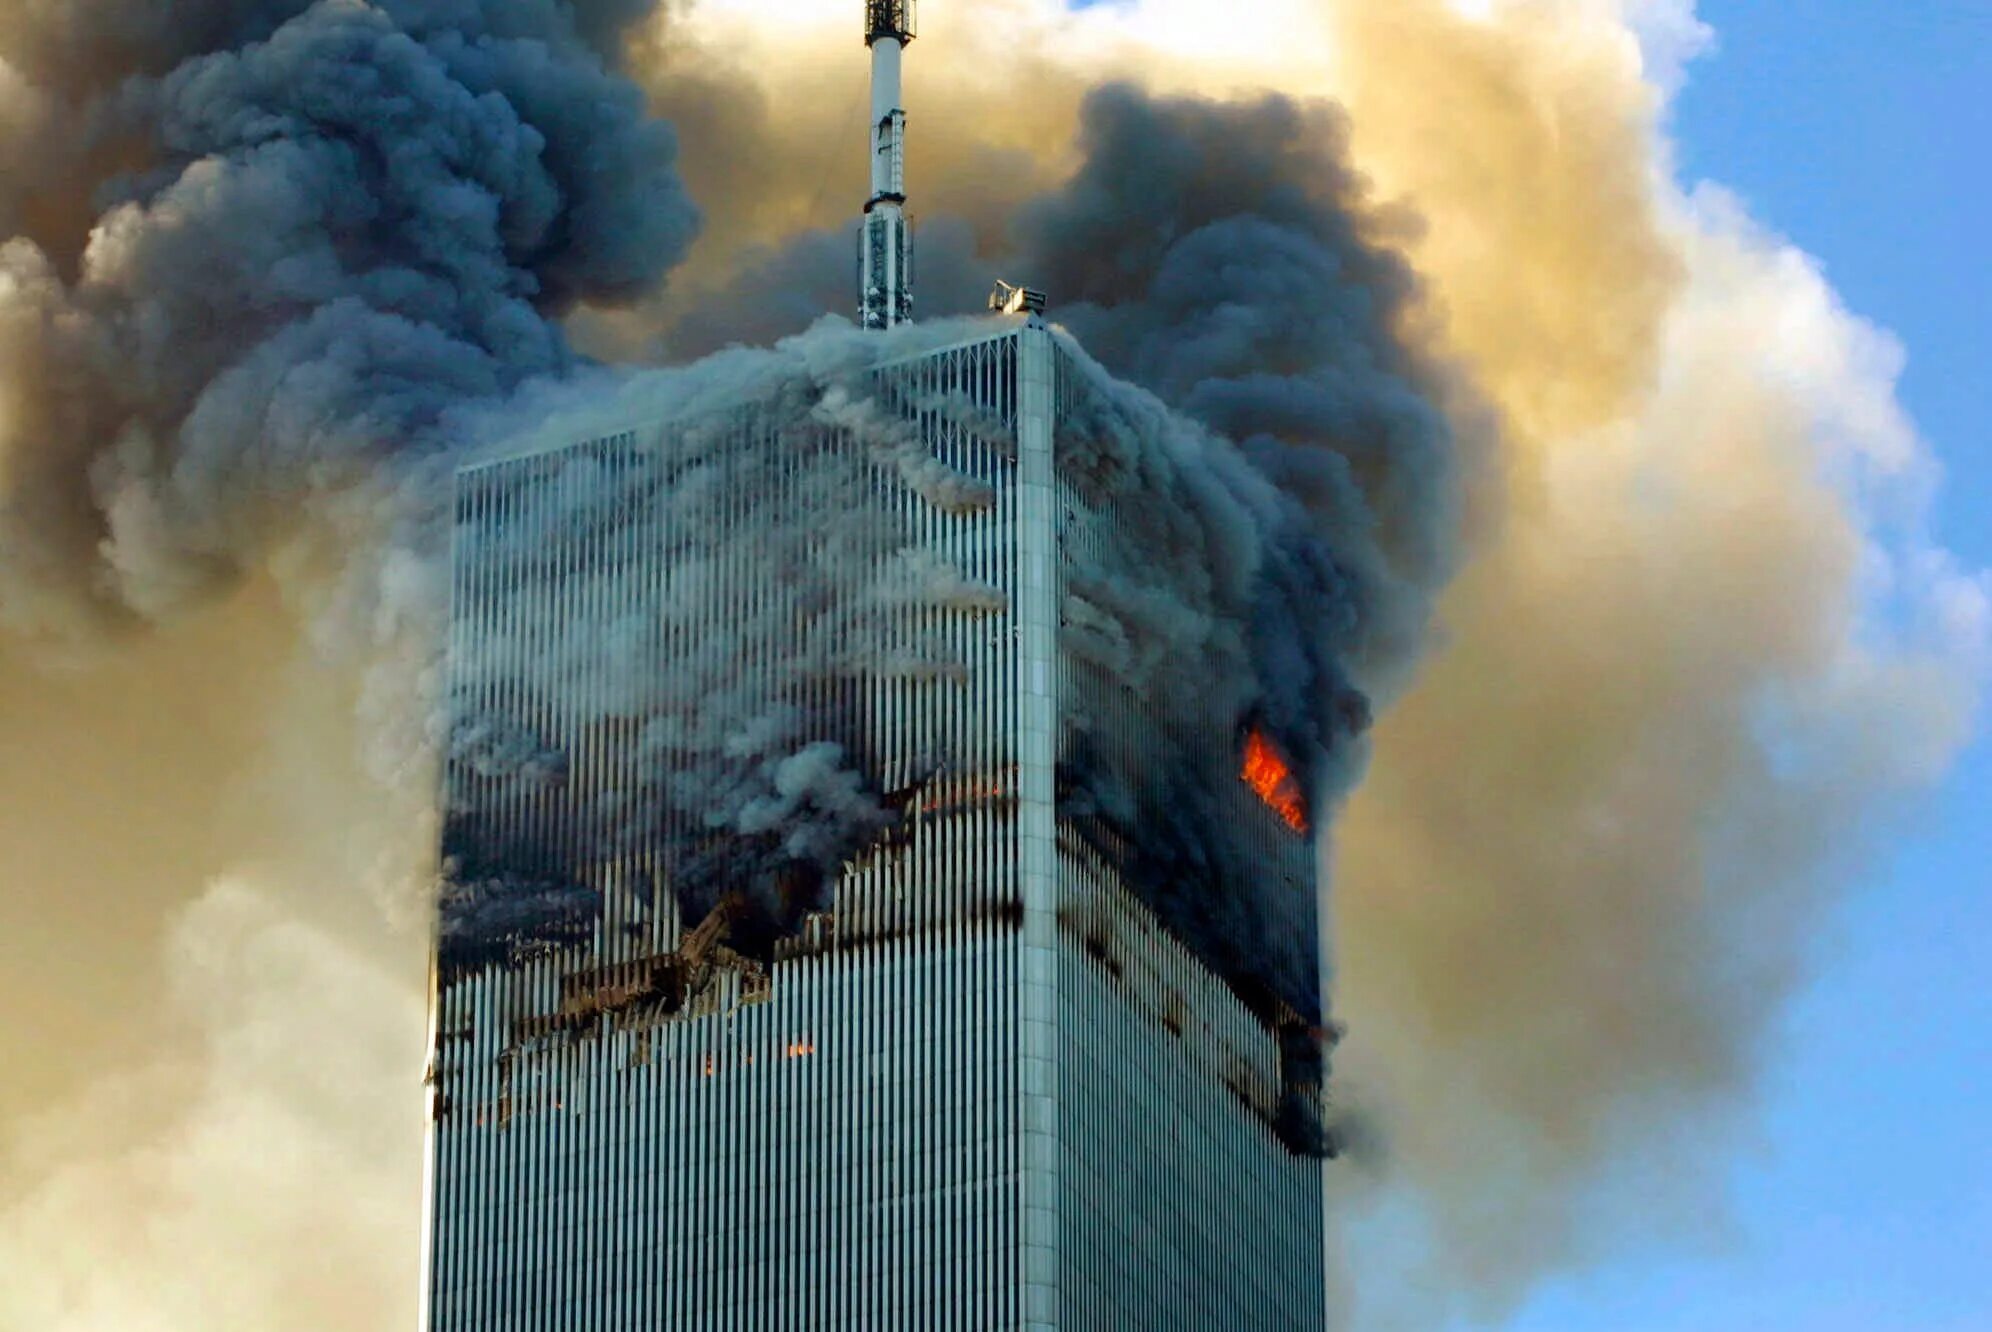 Башни Близнецы в Нью-Йорке 11 сентября. ВТЦ Нью-Йорк 2001. Башни ВТЦ 11 сентября 2001. Северная башня ВТЦ 11 сентября.